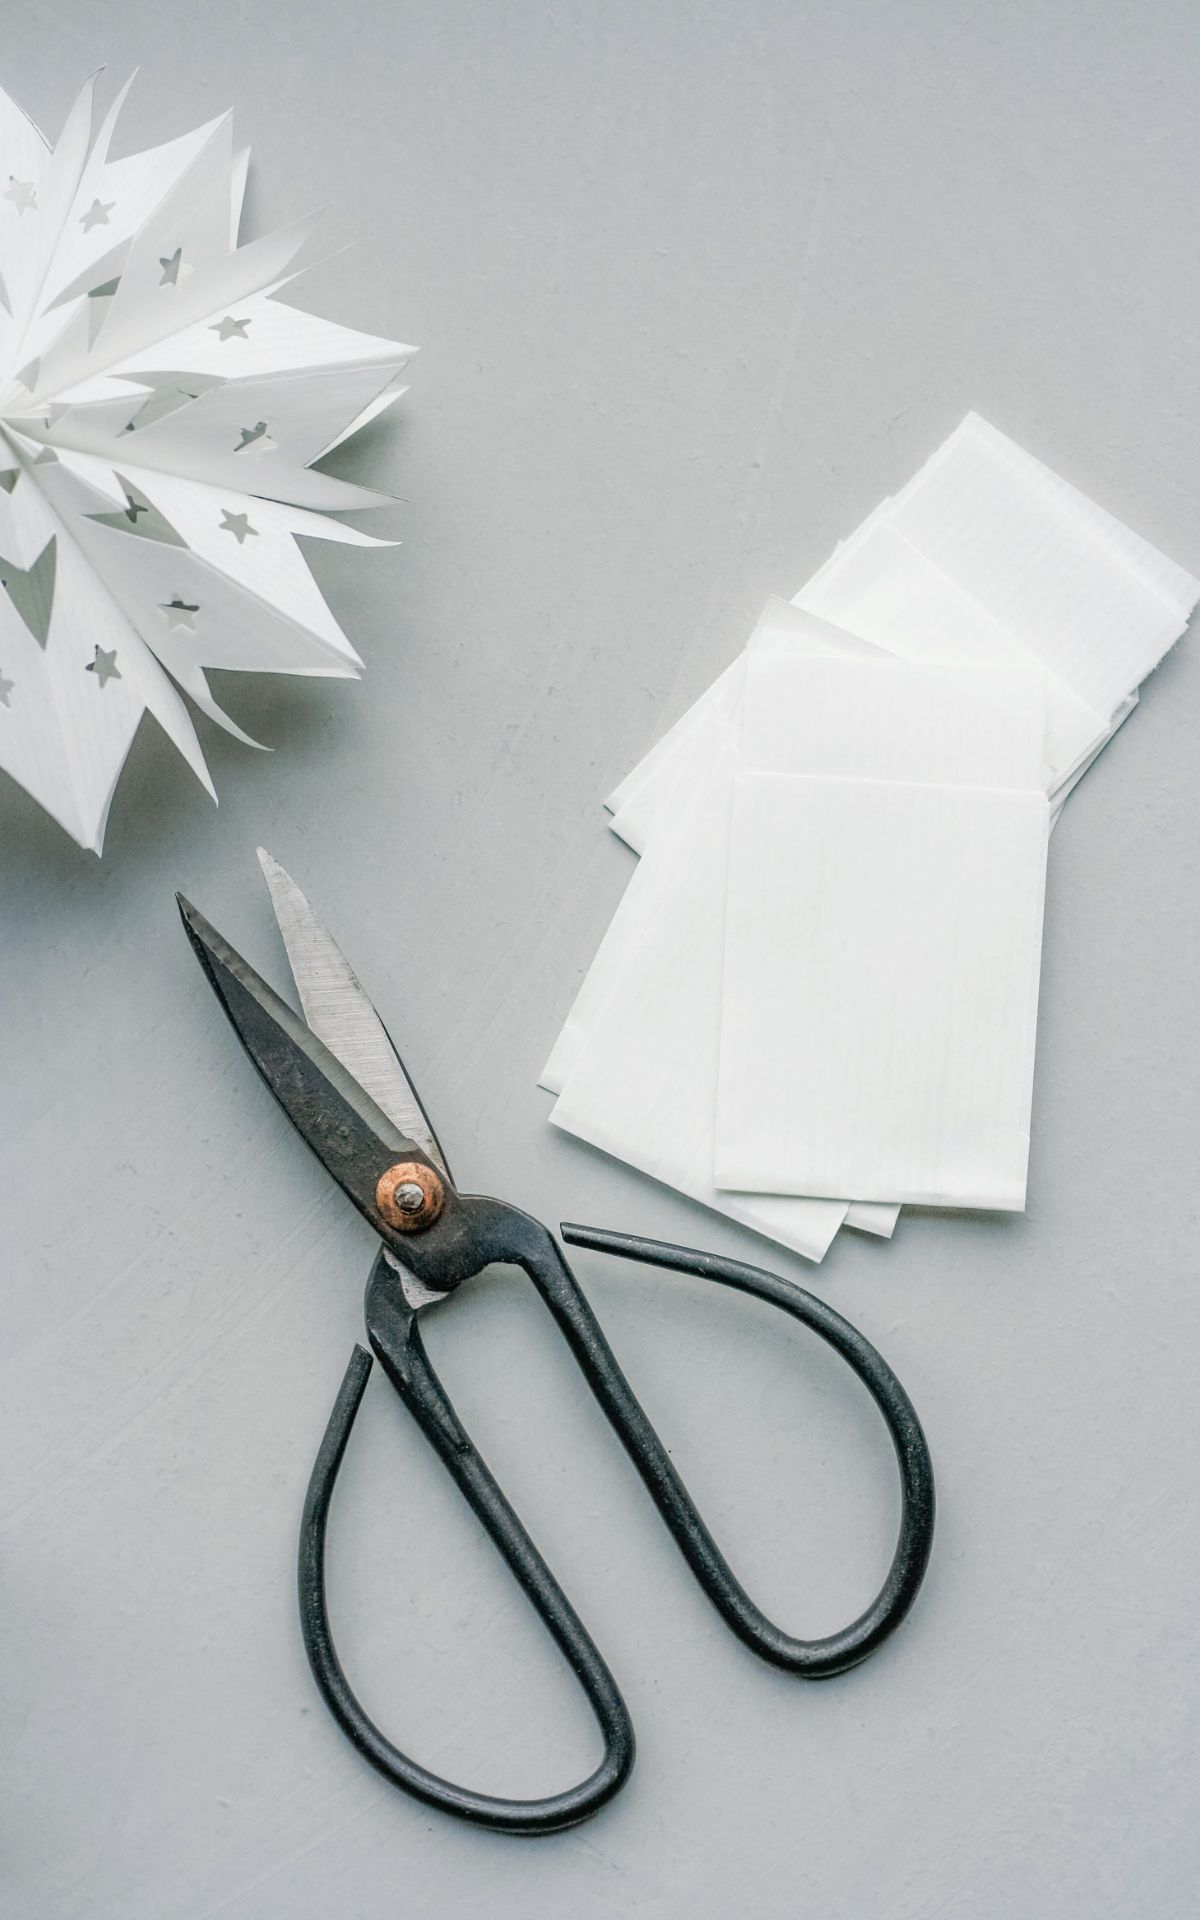 Sterne aus Papiertüten einfach selber machen - So gelingen Papiertütensterne selbst Kindern ganz leicht. Hier findest du die DIY Anleitung inkl. Vorlagen für die ultraschnelle Weihnachtsdeko.